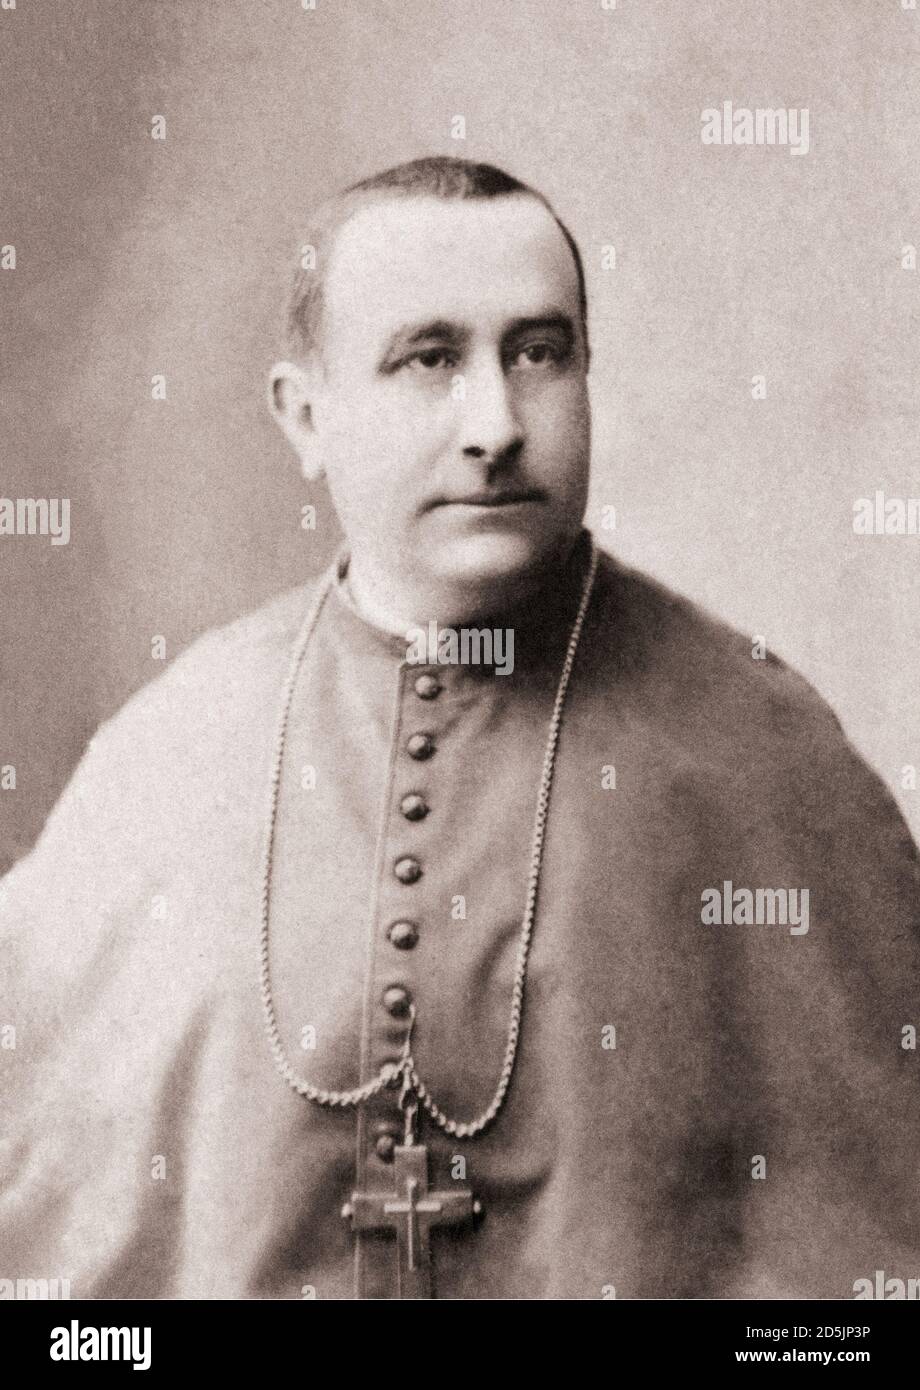 Camillo Siciliano di Rende (1847 - 1897) was an Italian cardinal and Archbishop of Benevento. Stock Photo